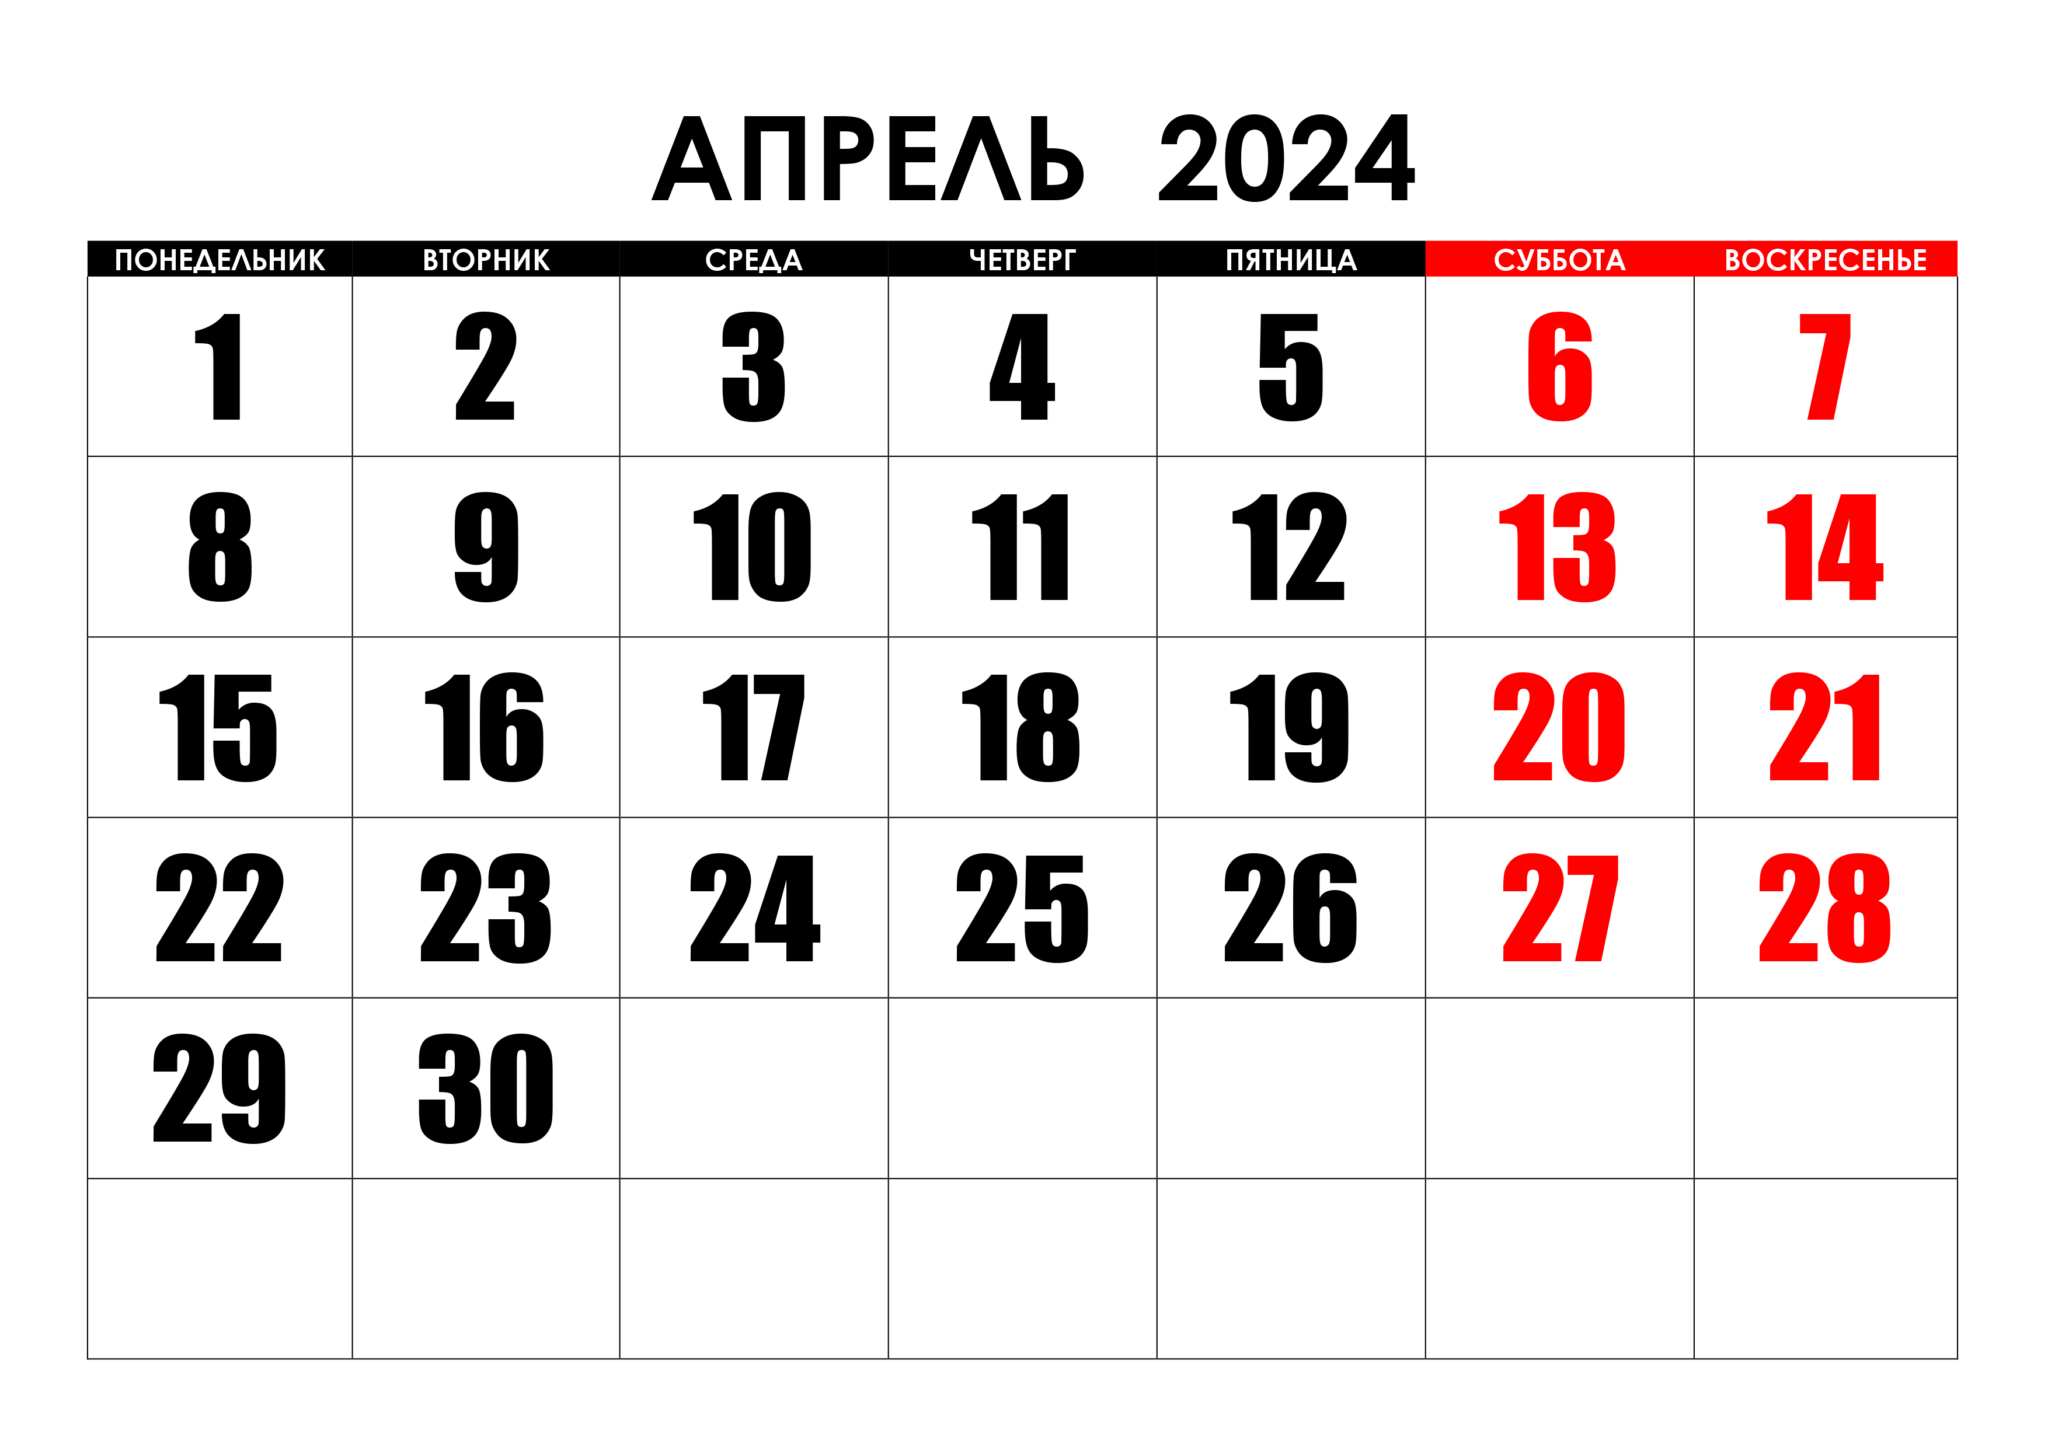 Сколько осталось до 10 апреля дней 2024. Календарь август 2022. Календарь на май 2022 года. Календарь на август 2022г. Календарь на пвгуст 2022года.